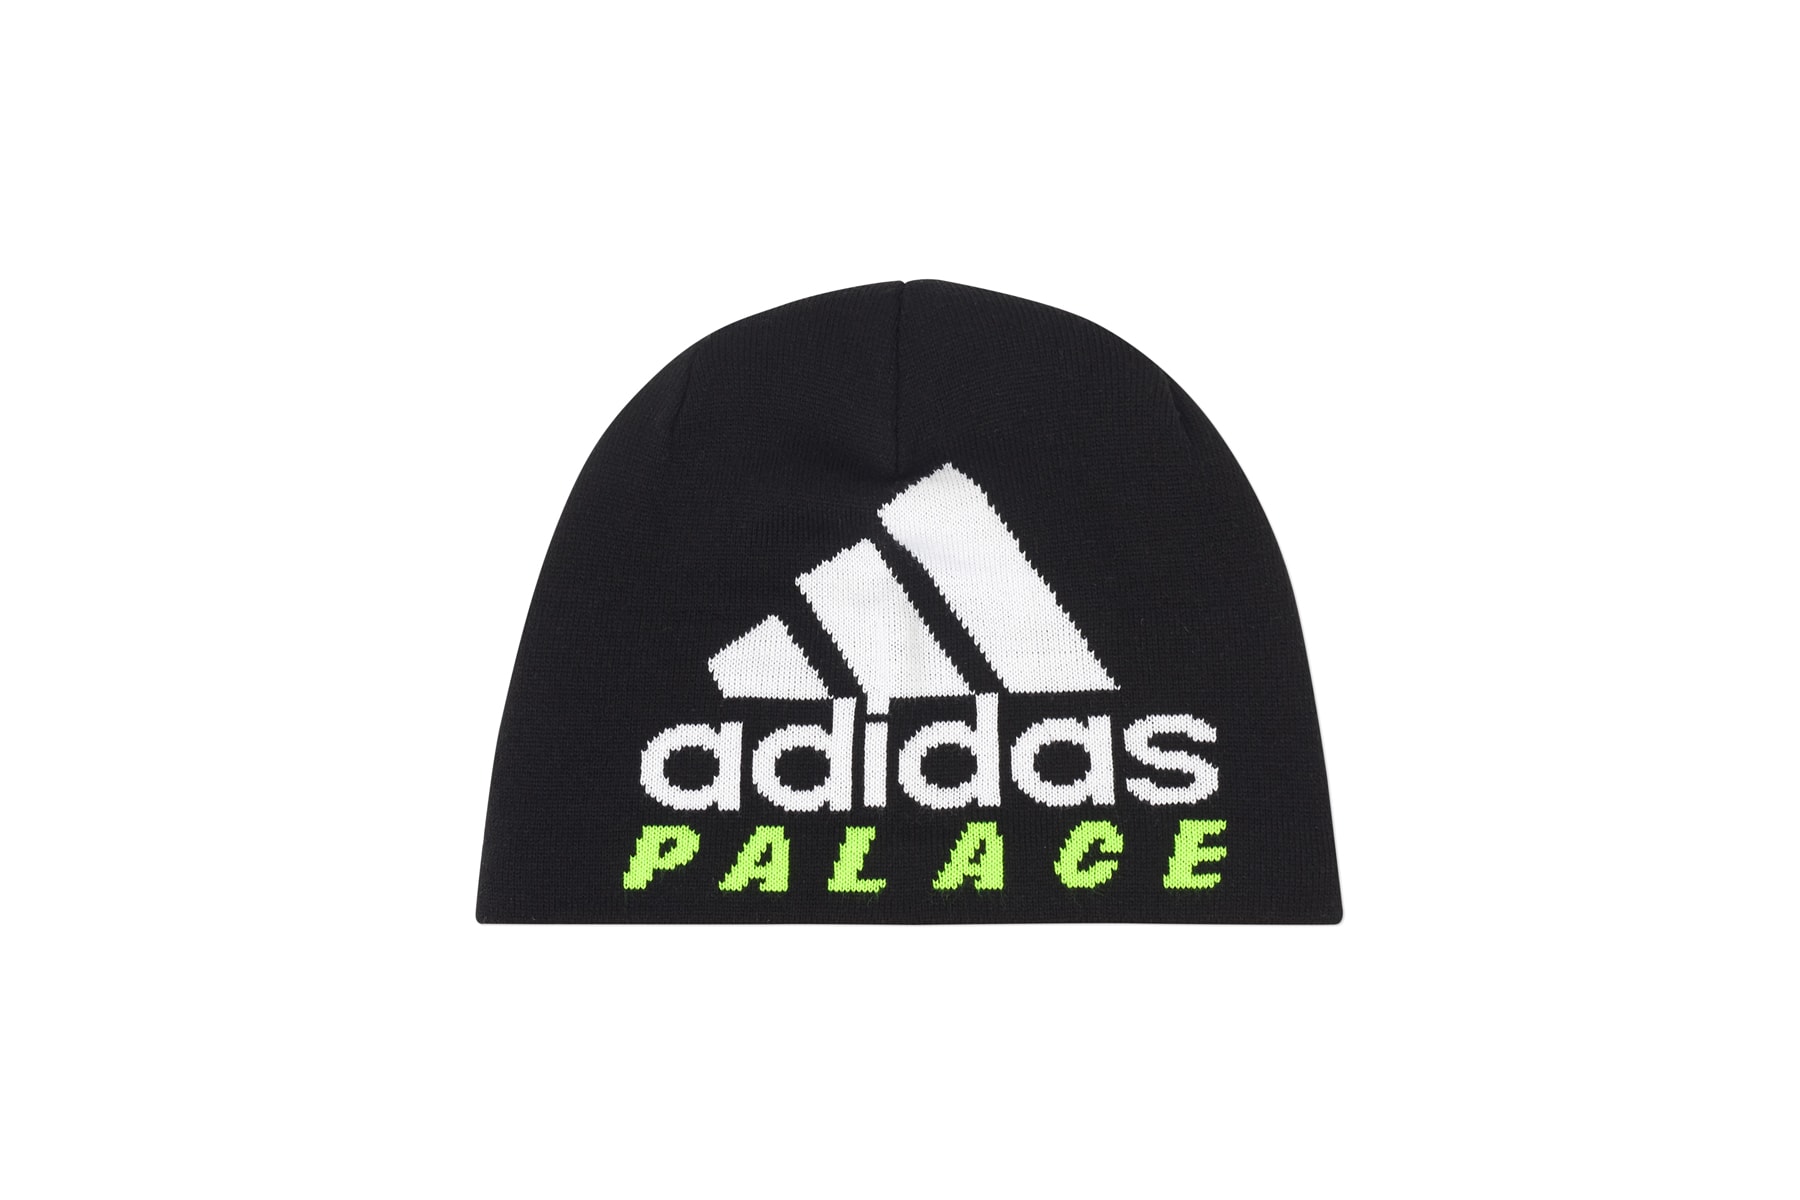 ユベントス × adidas x PALACE SKATEBOARDS 発売アイテム一覧 アディダス パレス